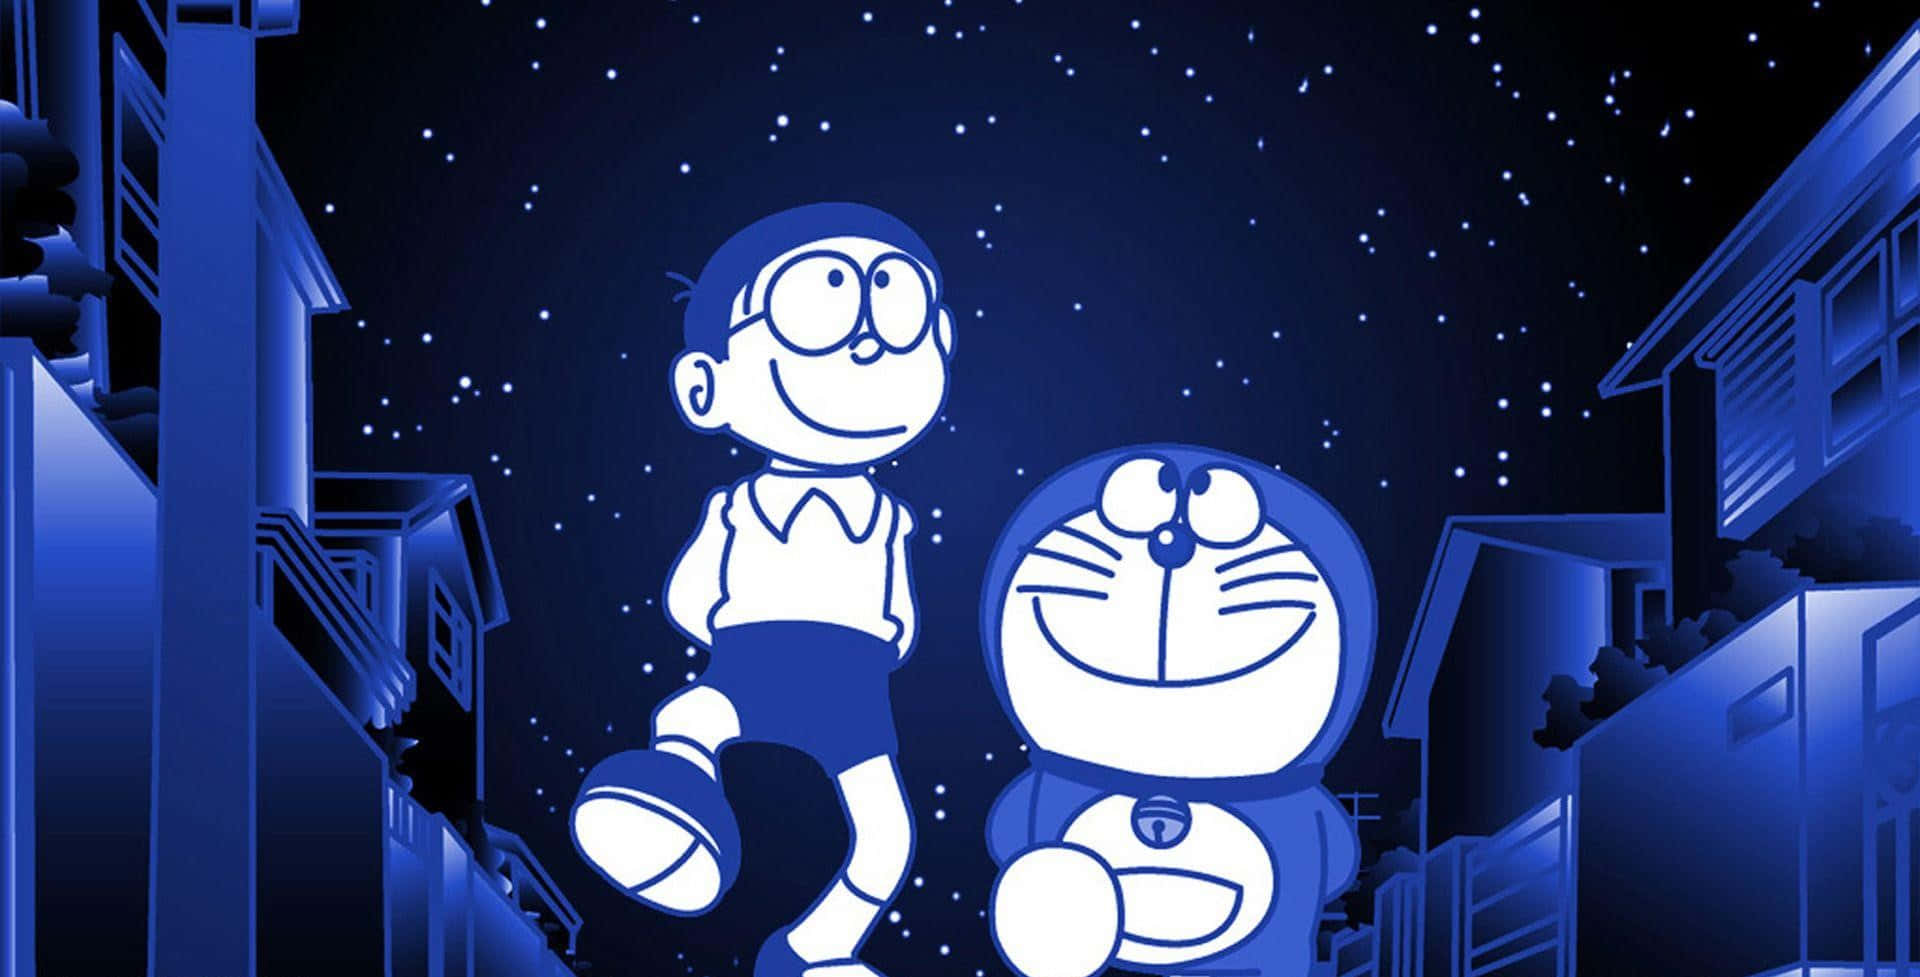 Doraemonllevando Felicidad Y Amistad.